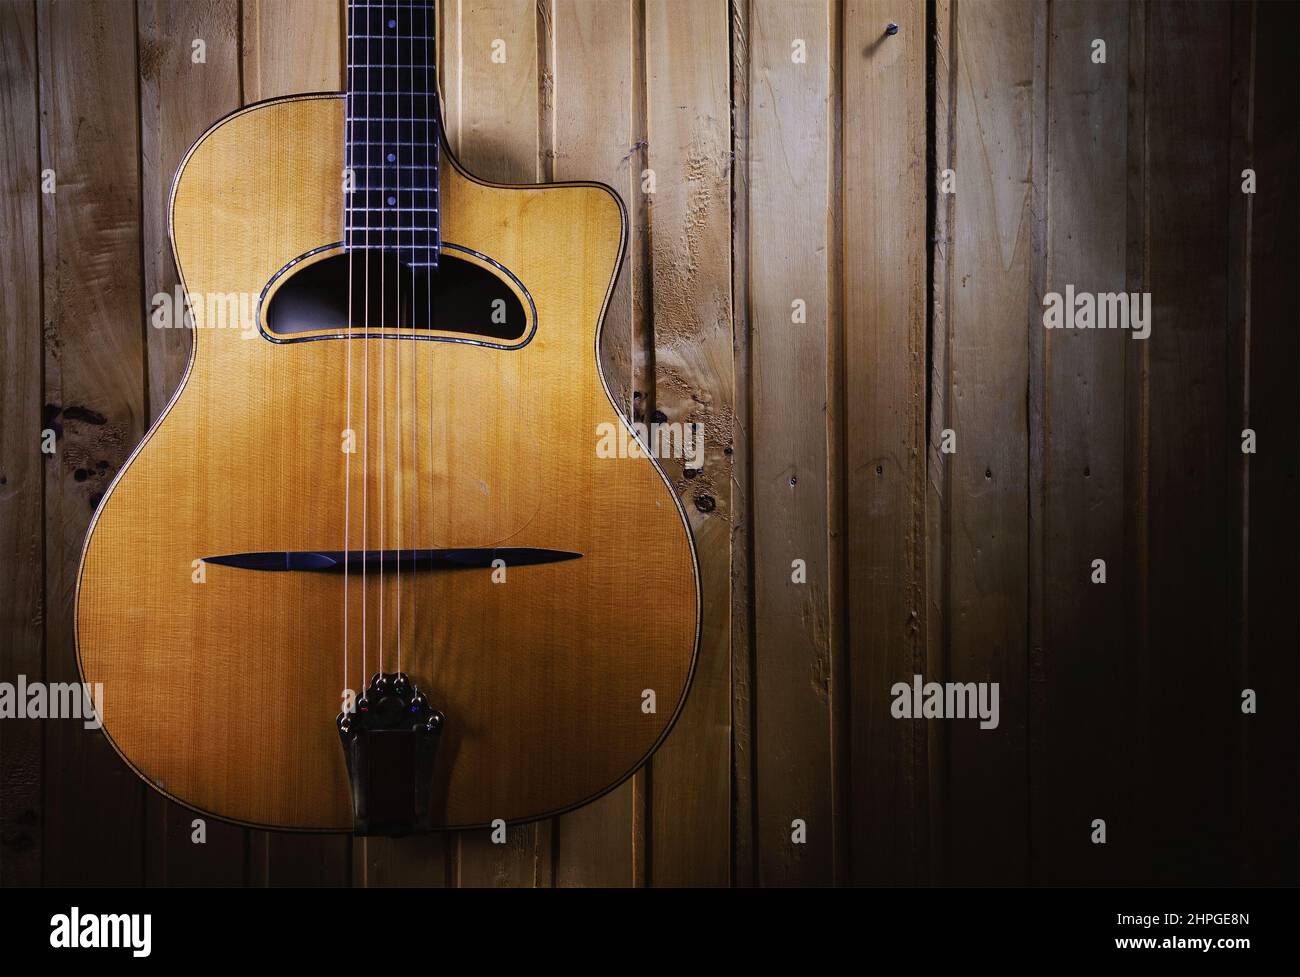 Des détails de guitare acoustique gitane jazz, pendus sur un mur en bois. Banque D'Images